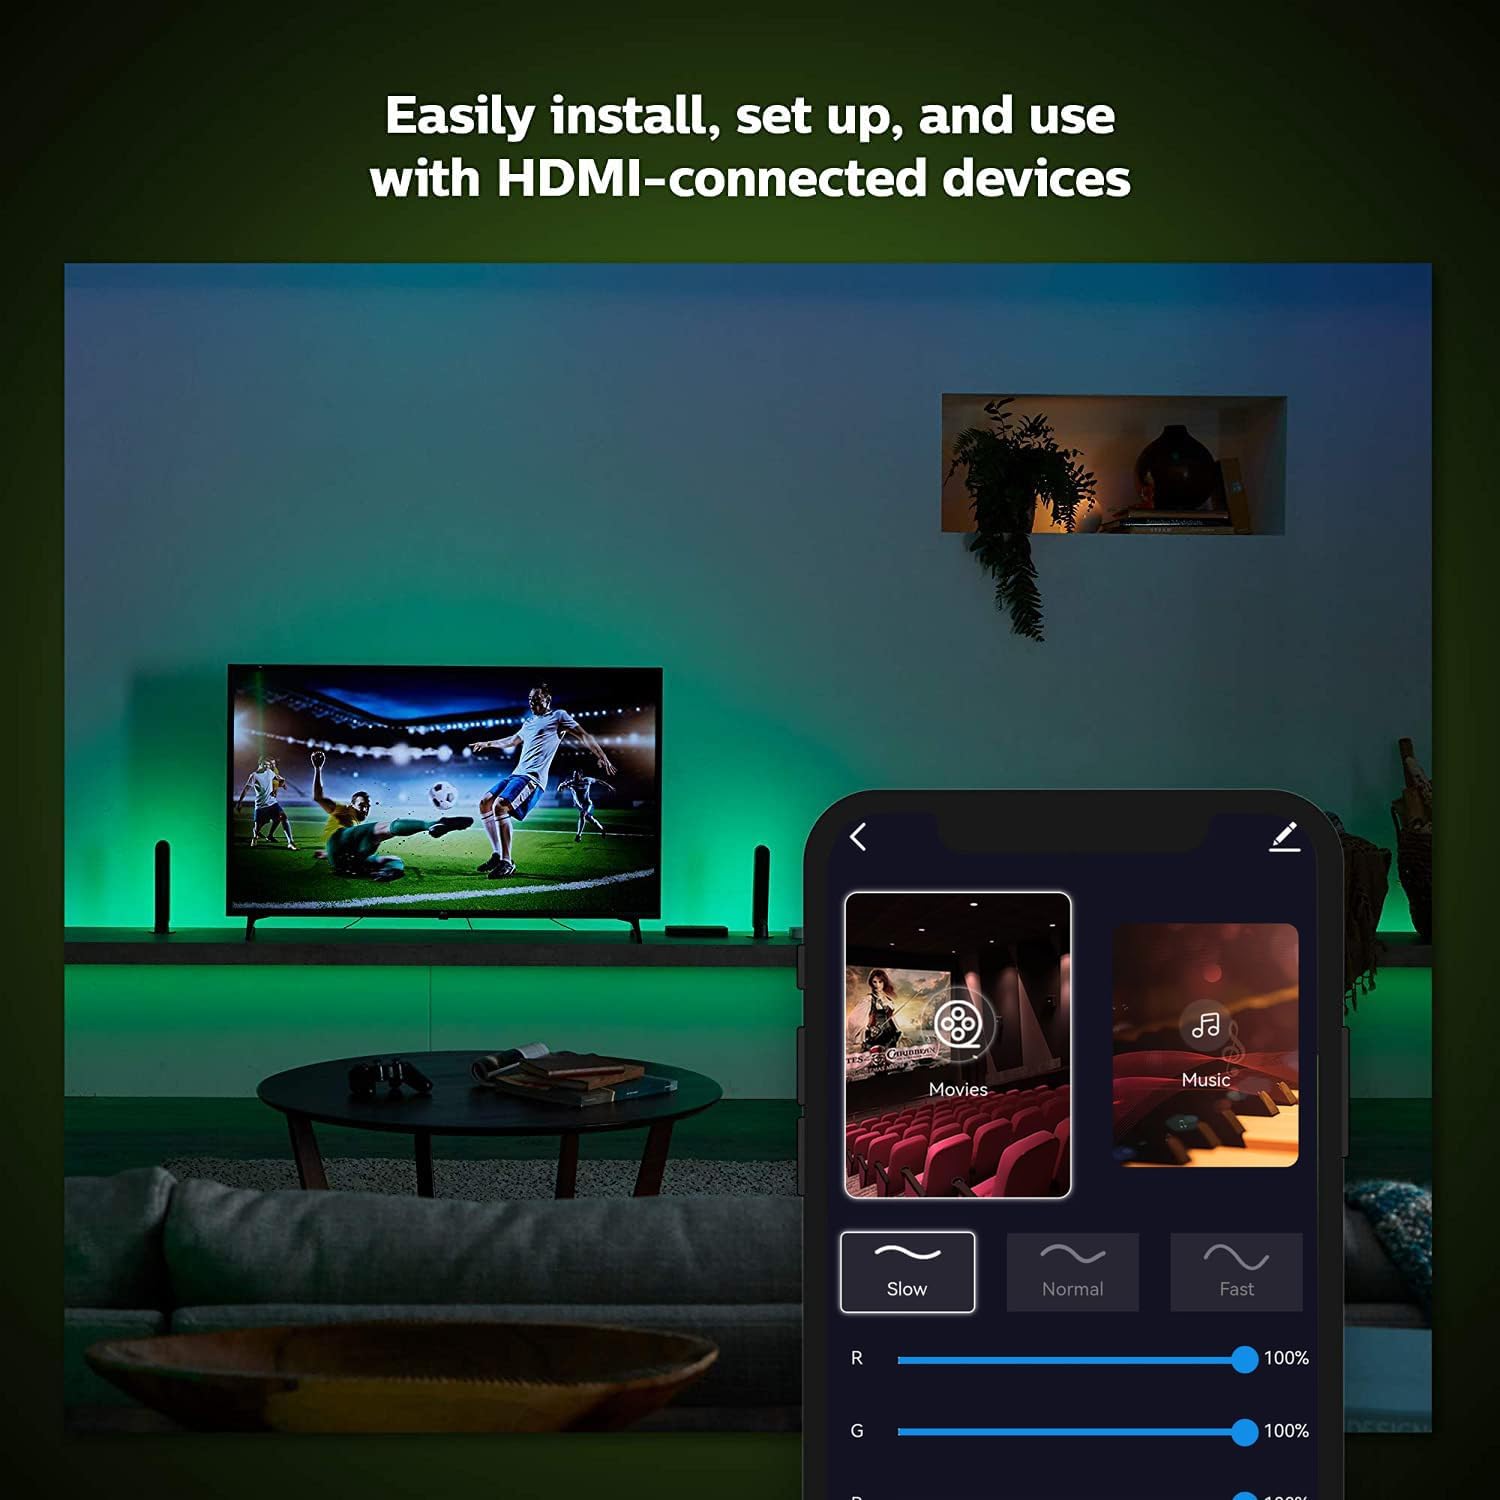 TaoTronics 5M TV LED Backlights, 4K Gaming Box &32 FT RGB TV LED Light Strip